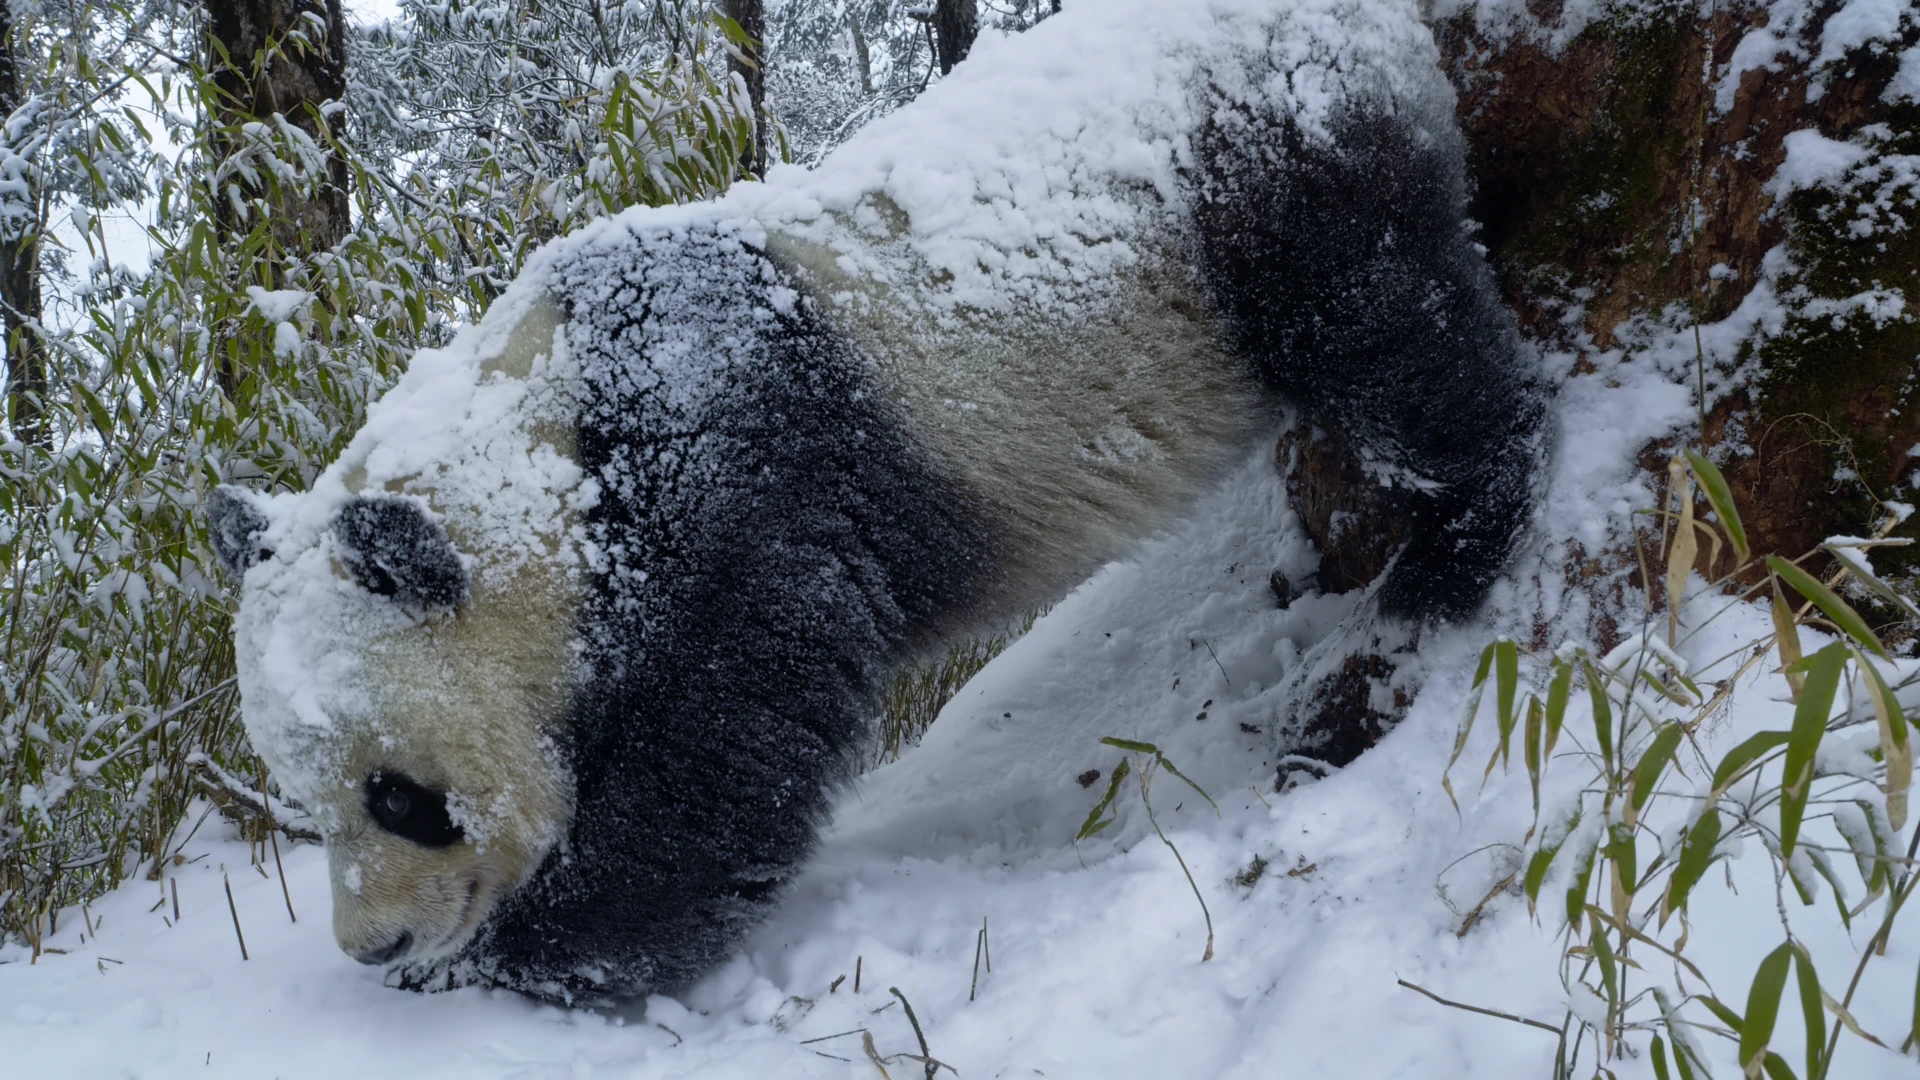 Giant panda (Ailuropoda melanoleuca melanoleuca) as shown in Frozen Planet II - Frozen Peaks